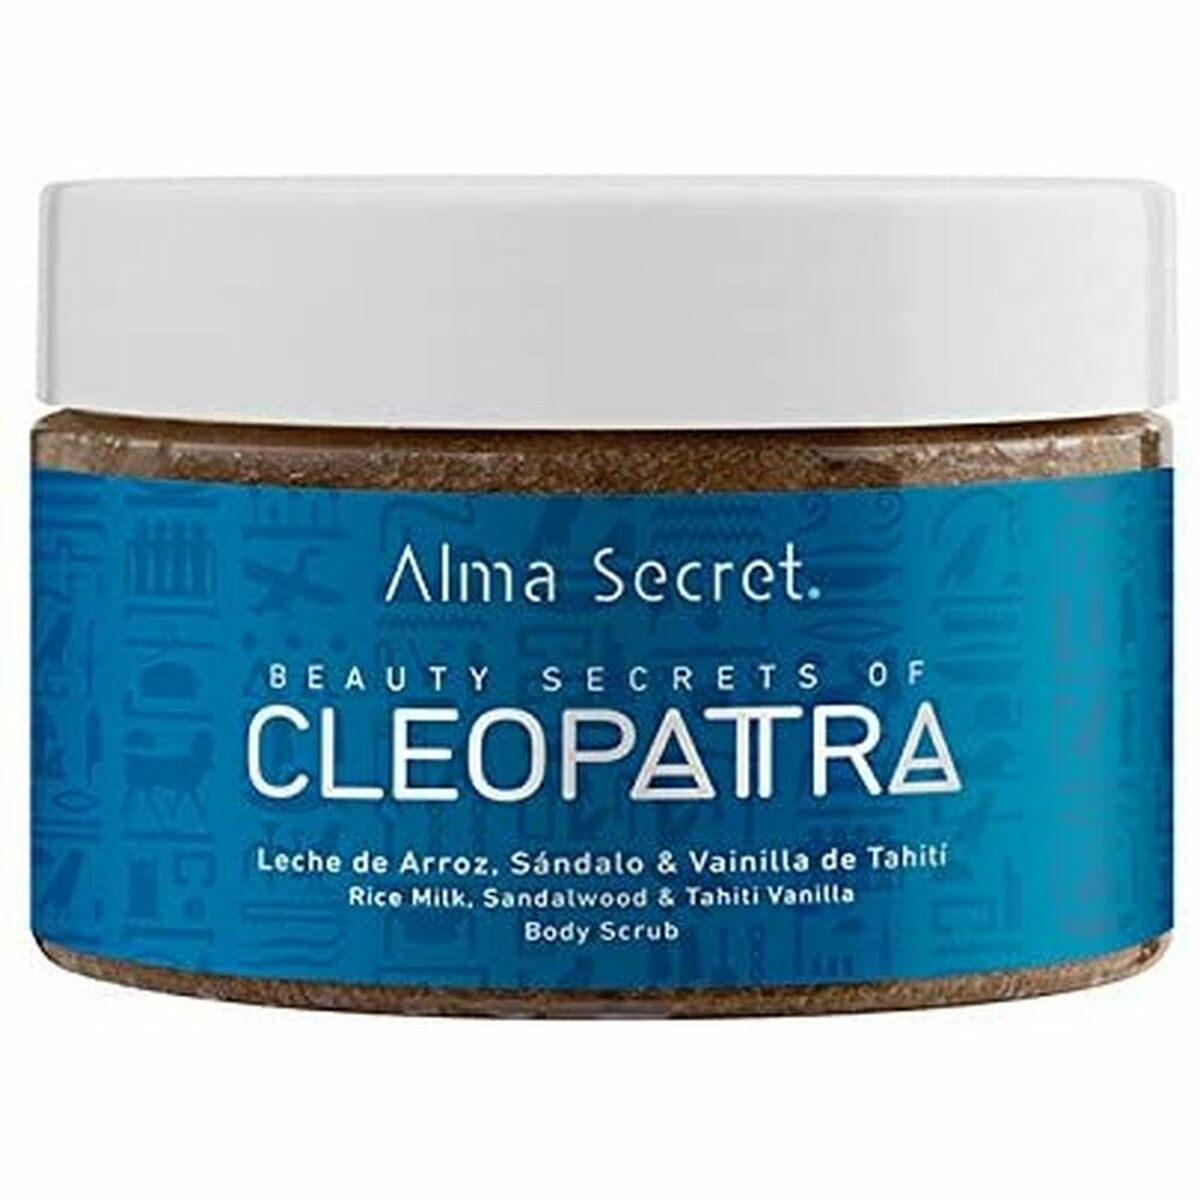 Body Exfoliator Alma Secret Cleopatra 250 ml (Parapharmacy)